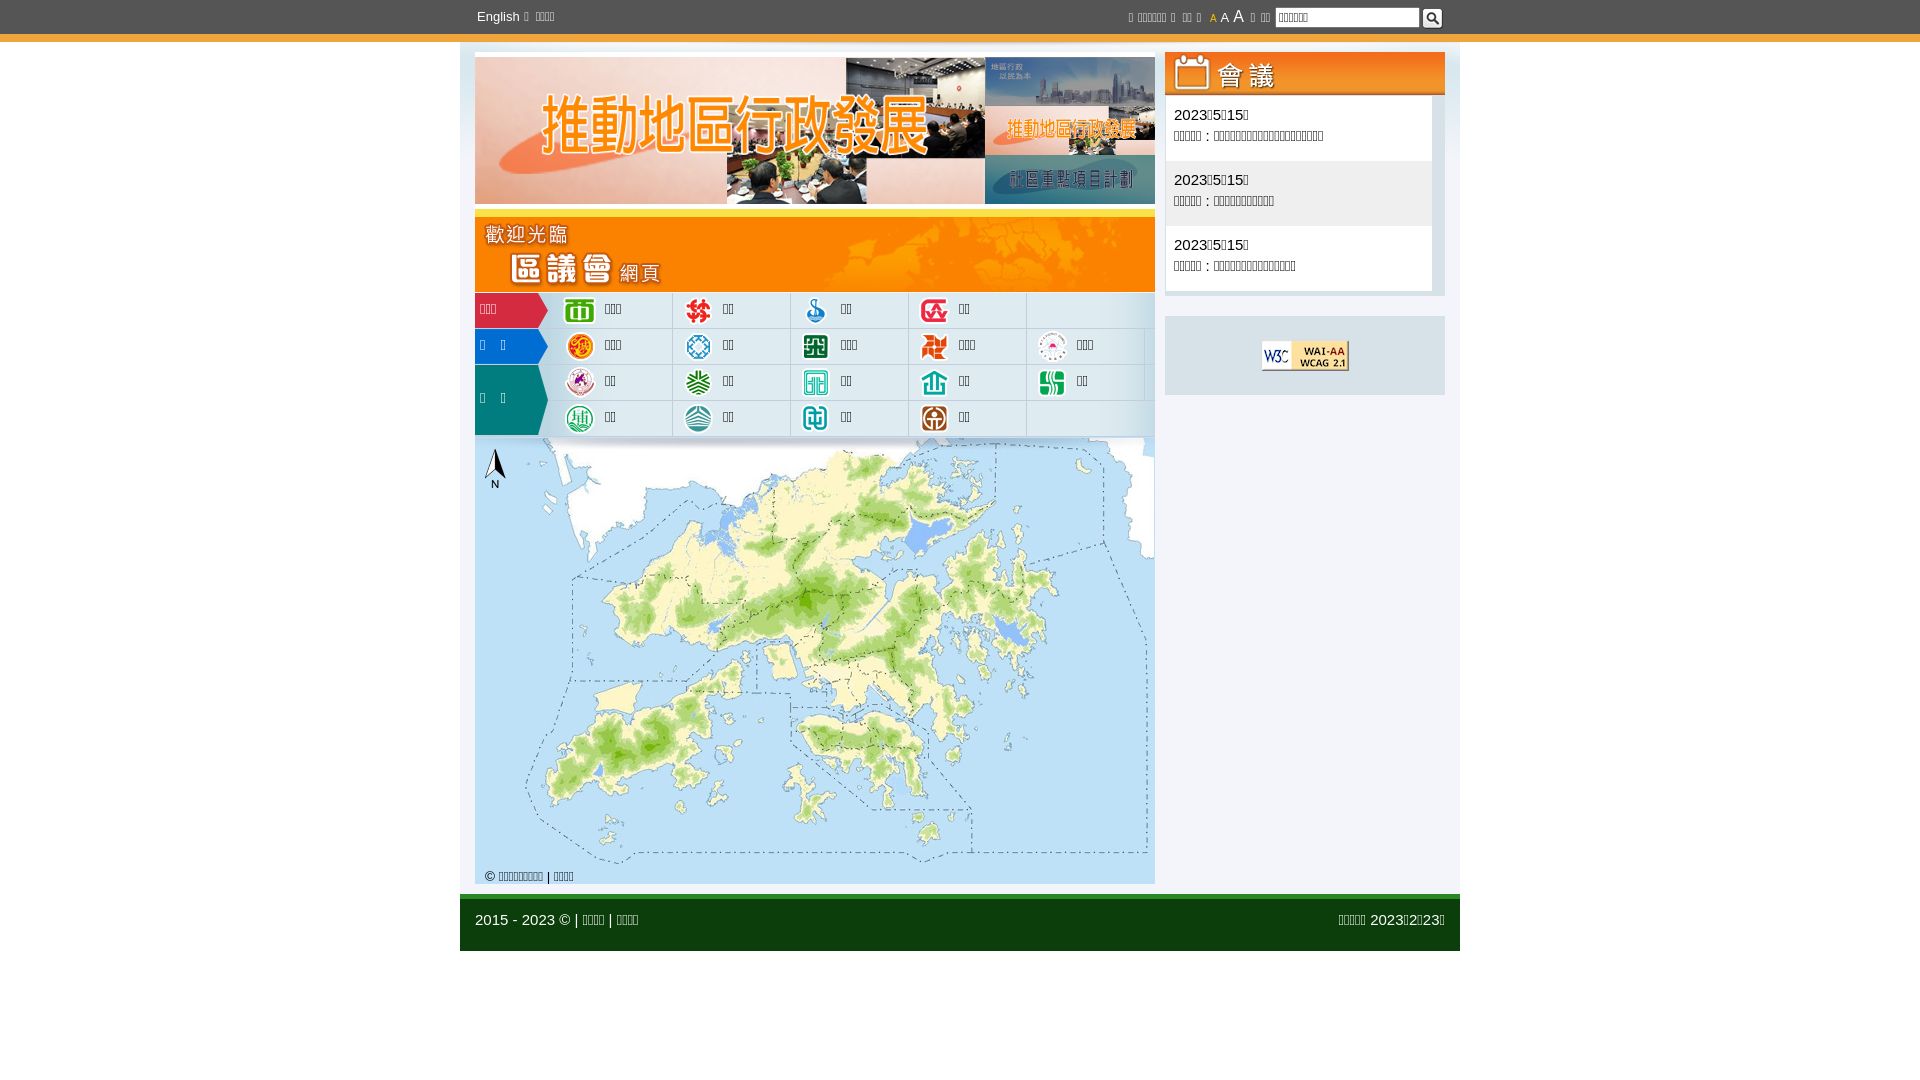 Stato del sito web districtcouncils.gov.hk è   ONLINE